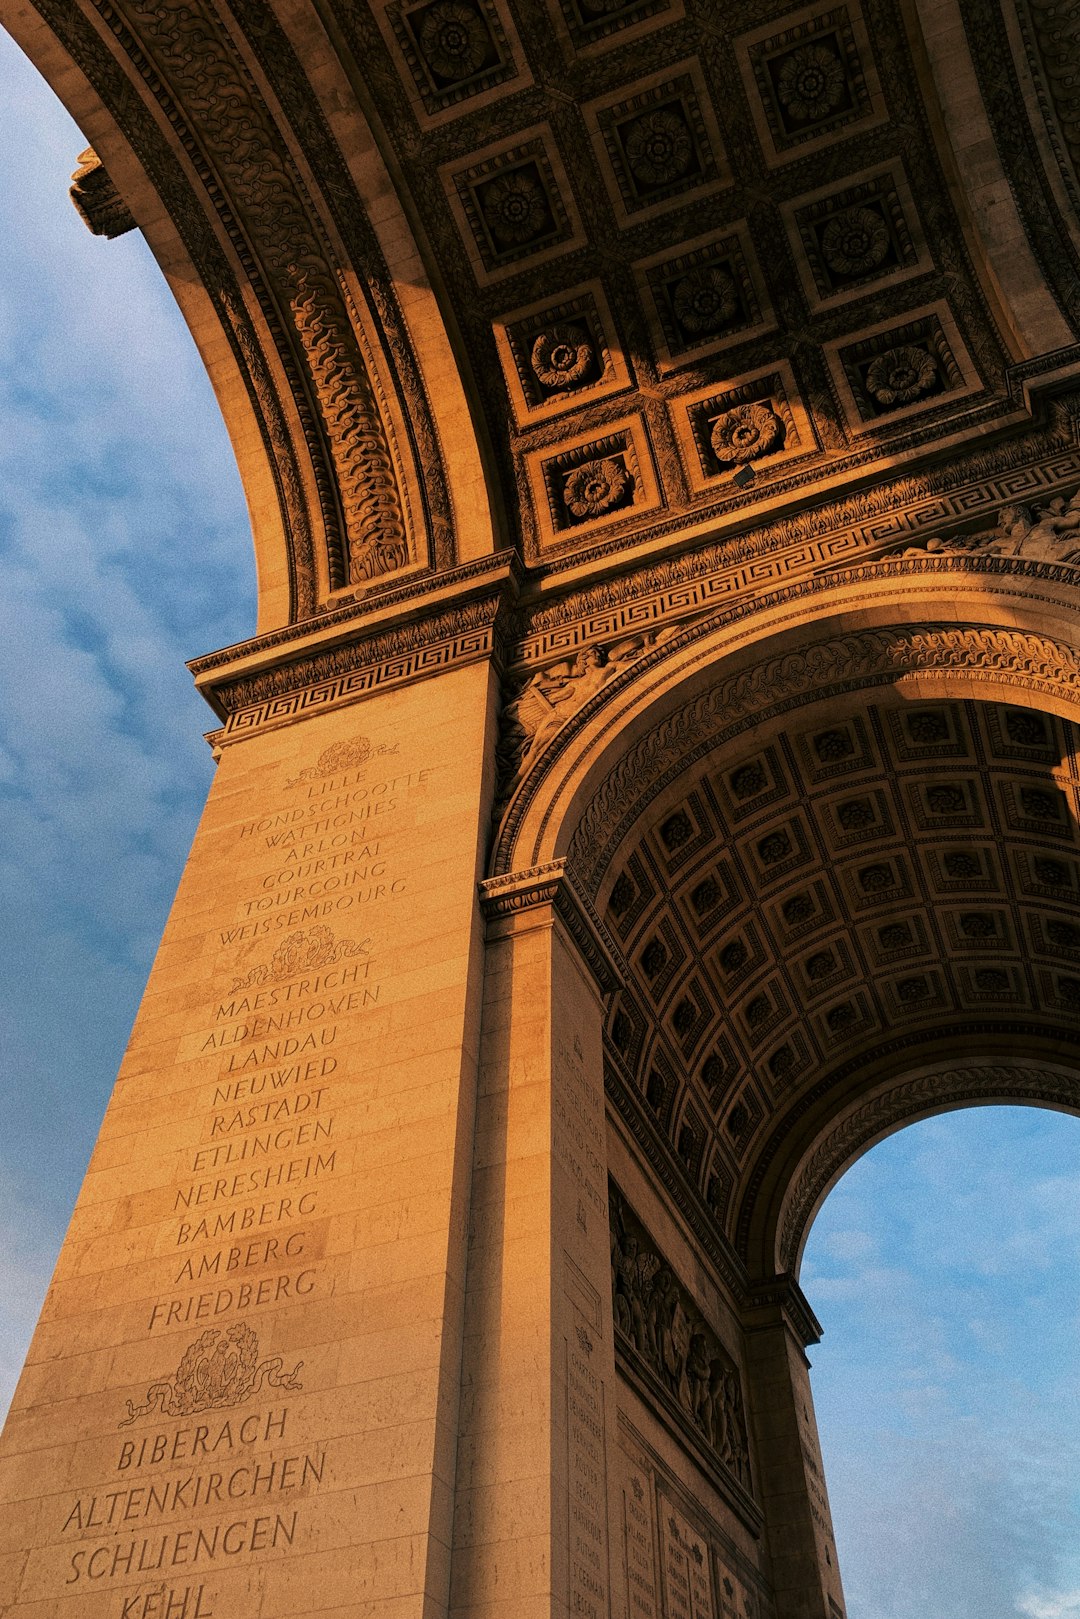 Landmark photo spot Charles de Gaulle – Étoile Louis Vuitton Foundation